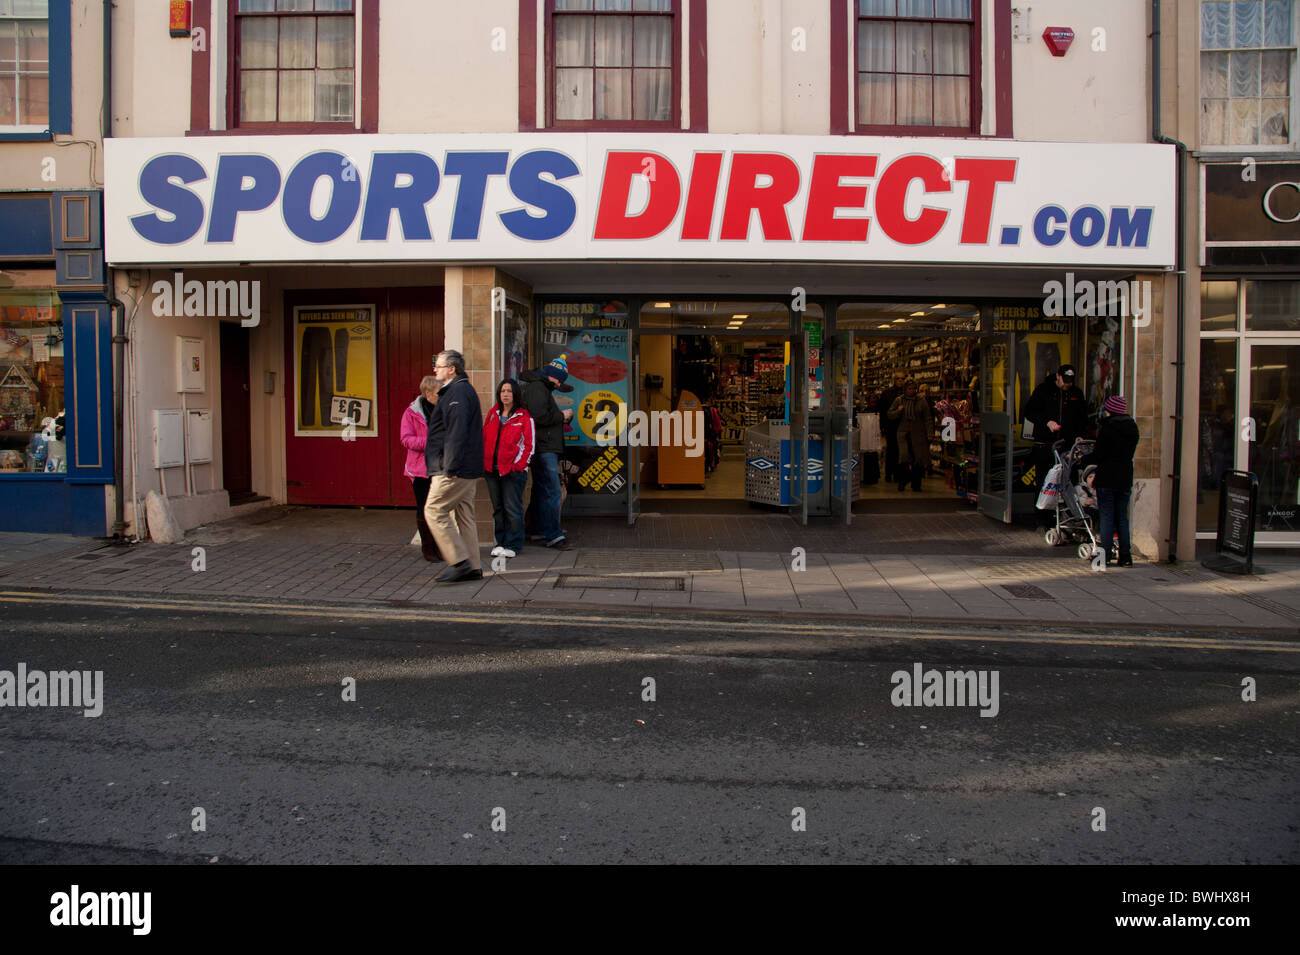 Sports direct shop store uk Banque de photographies et d'images à haute  résolution - Alamy